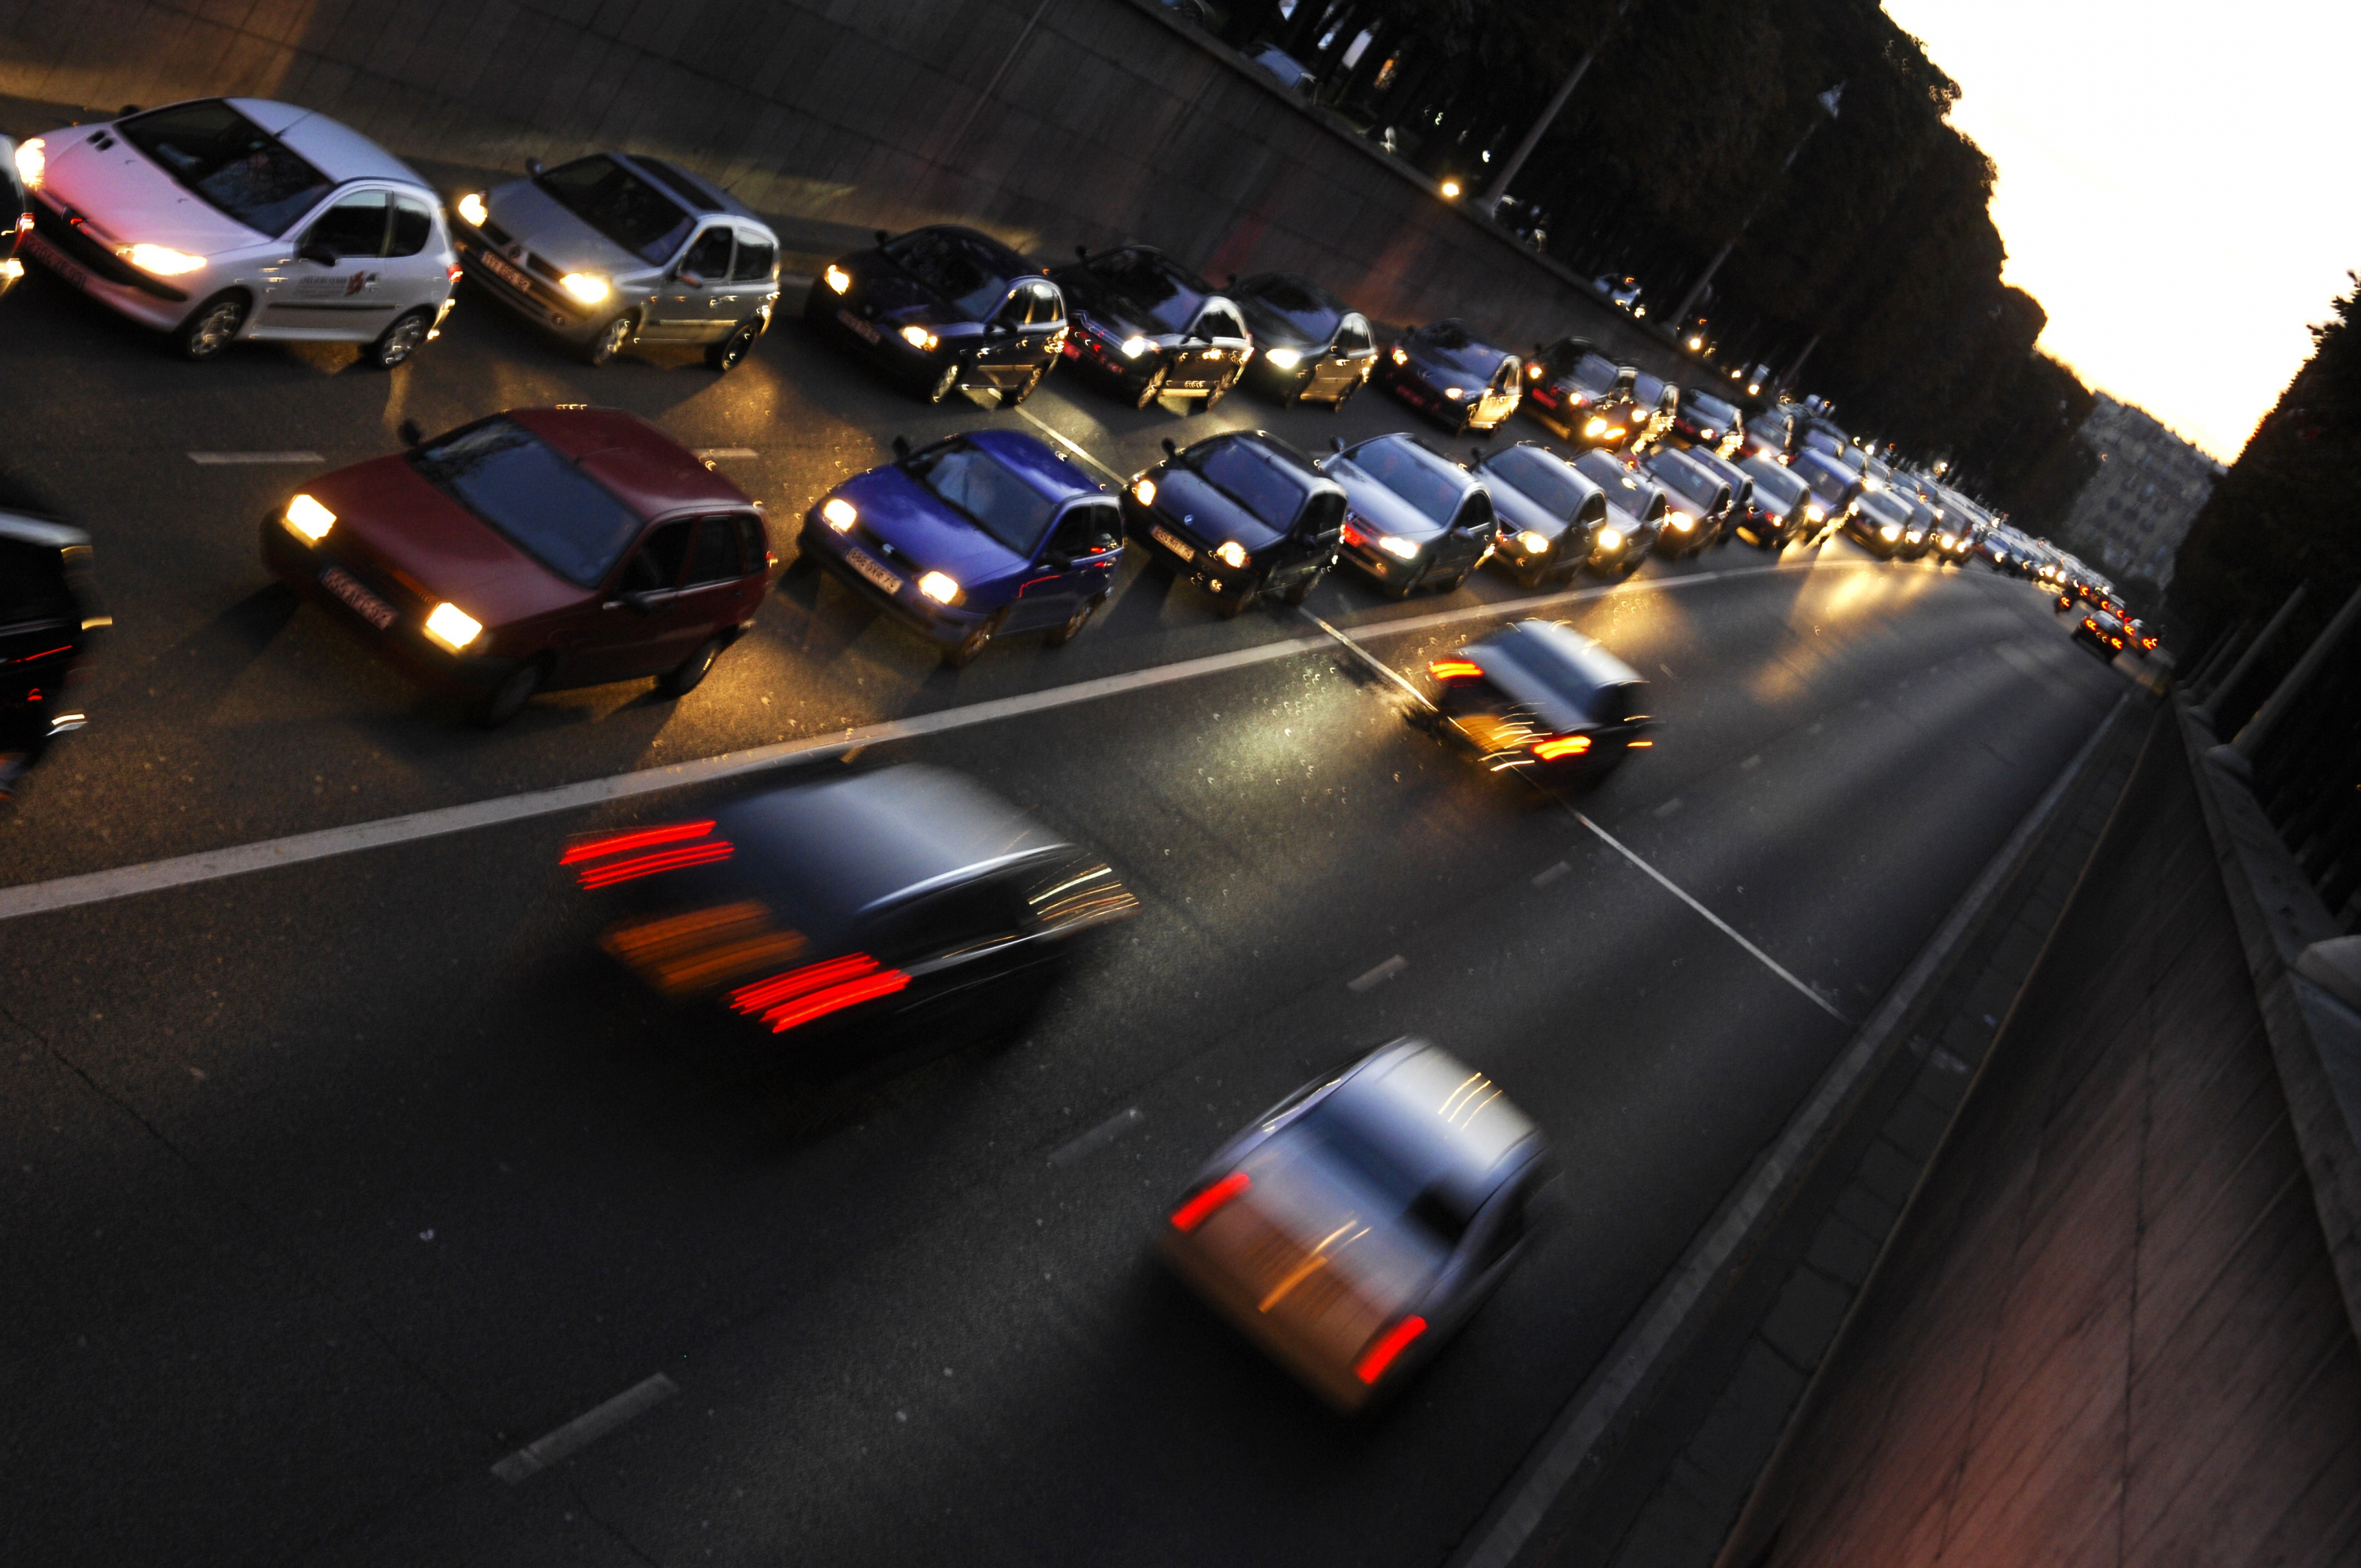 Régulation dynamique des vitesses : Projets de gestion dynamique du trafic.  Fiche n° 05 - Cerema